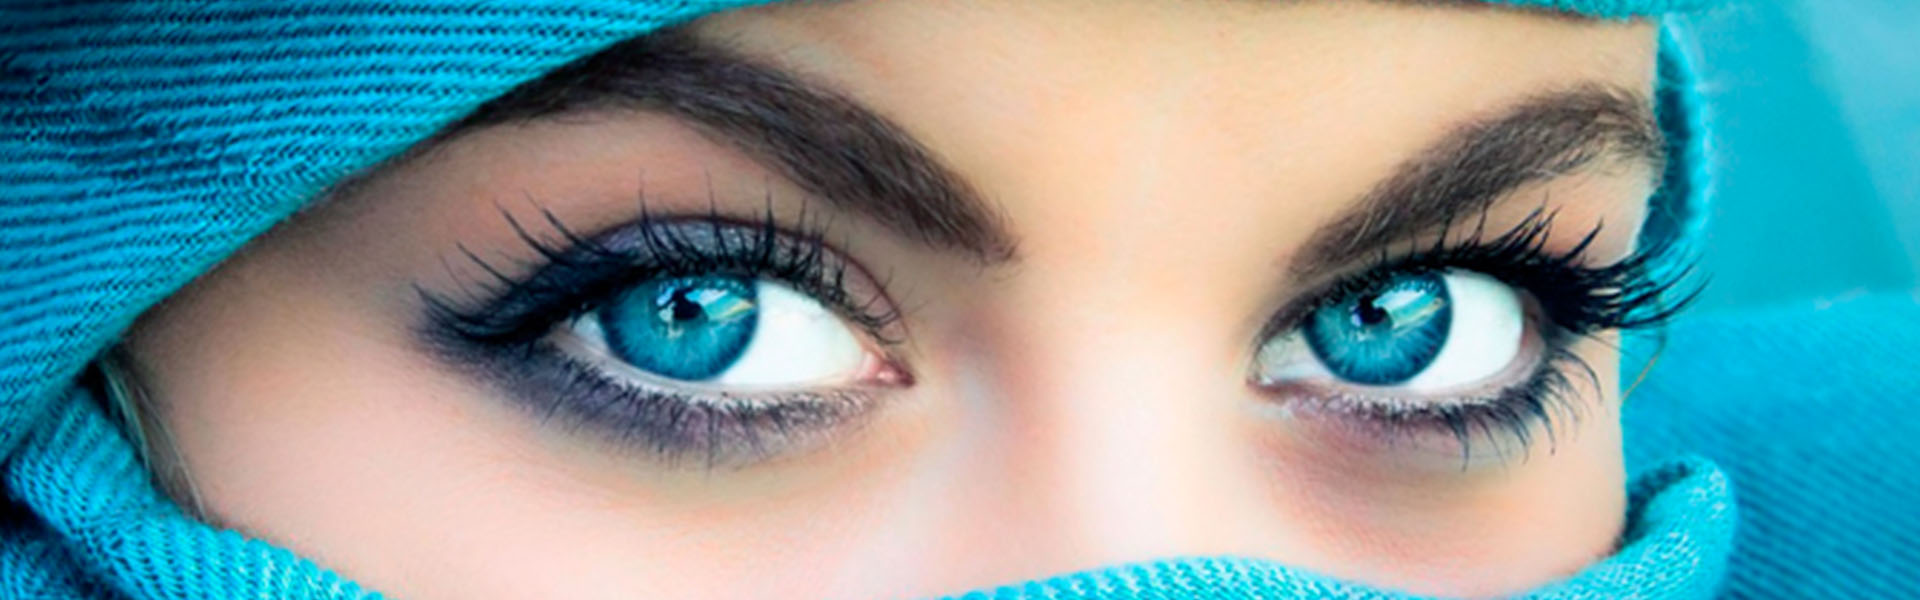 Красивые голубые женские глаза